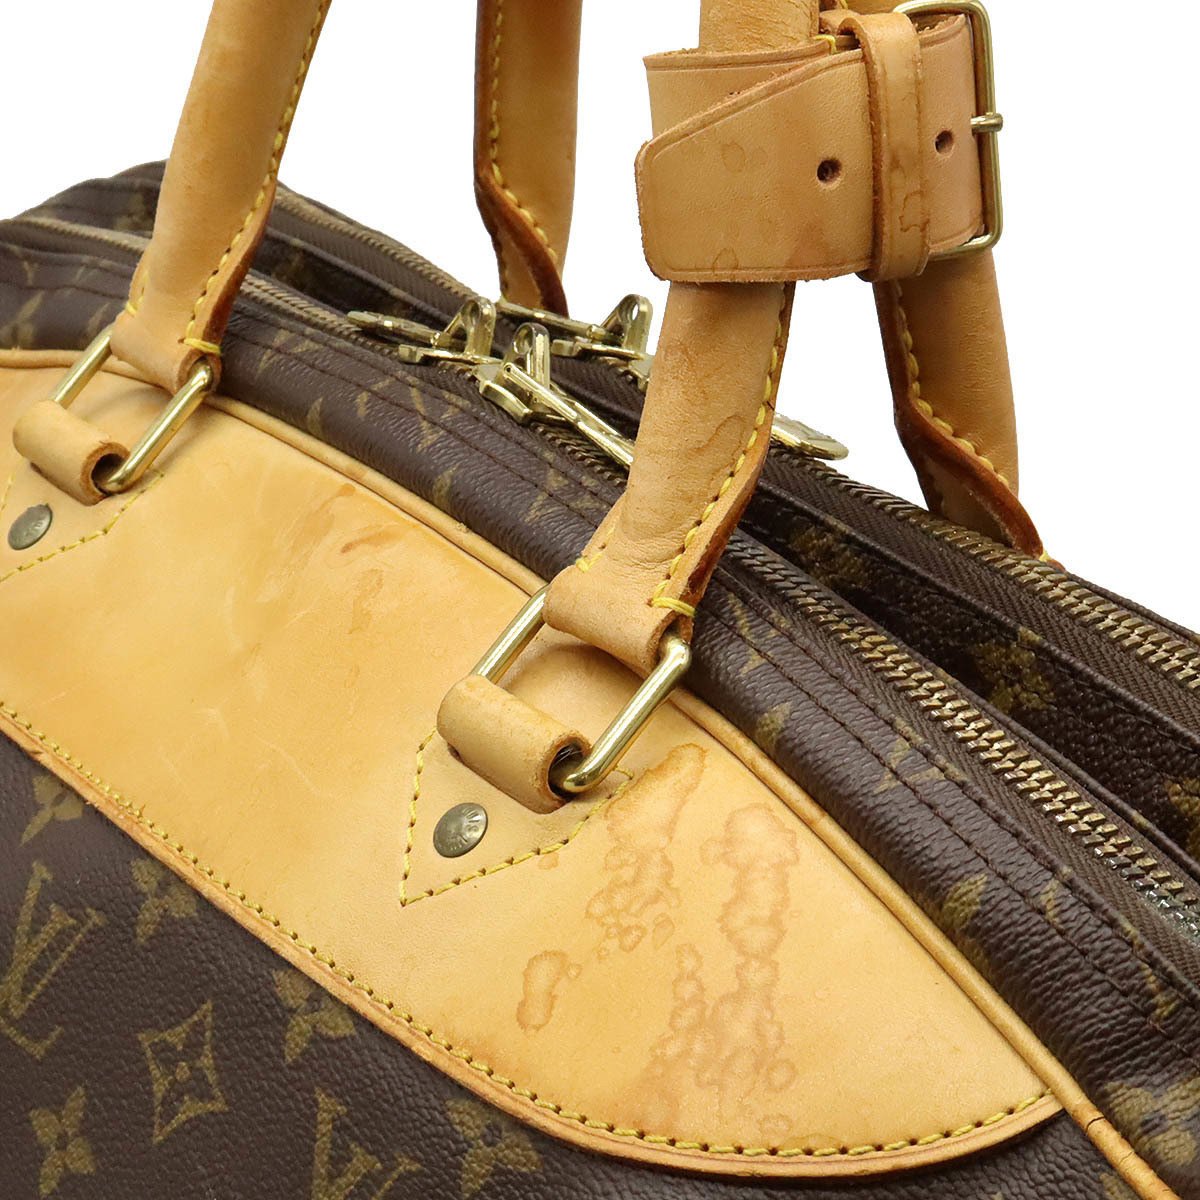 Louis Vuitton 2002 pre-owned Alize 2 Poches handbag - ShopStyle